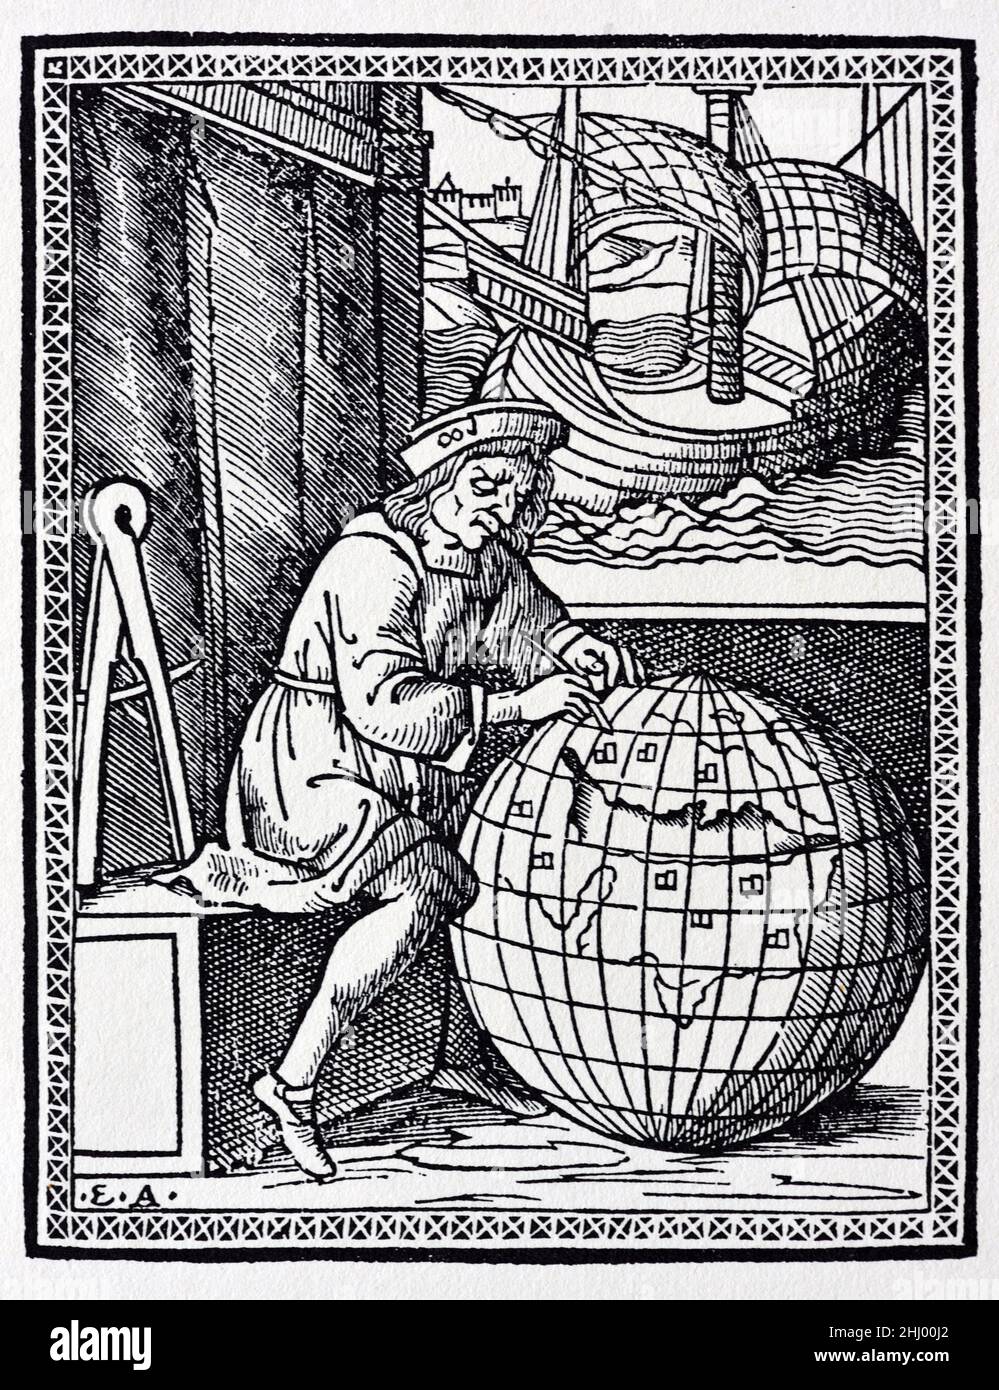 Der italienische Reisende und Entdecker Ludovico de Varthem (c1470-1517) plant seine Reisen auf dem Giant World Globe oder dem Terrestrial Globe. Seine Reisen, Itinerario de Ludouico de Varthema Bolognese, wurden erstmals 1510 in Rom veröffentlicht. Vintage Holzschnitt, Gravur oder Illustration Stockfoto